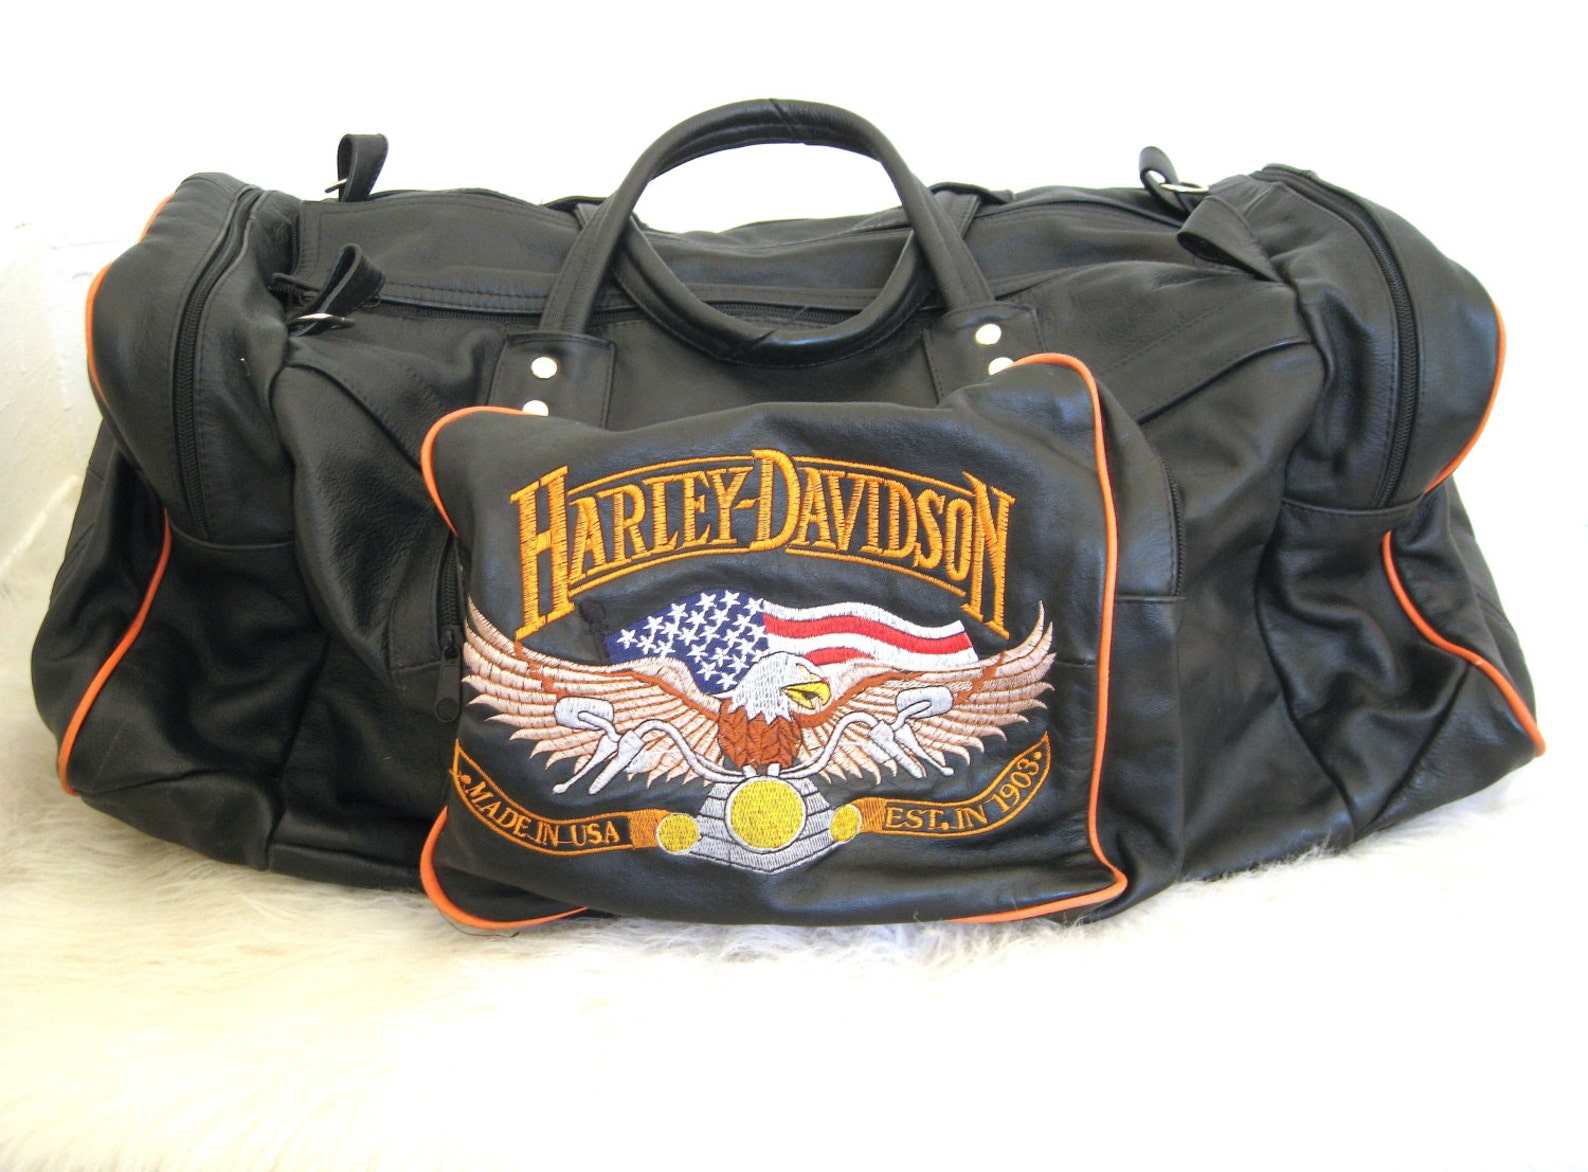 harley davidson duffle travel bag